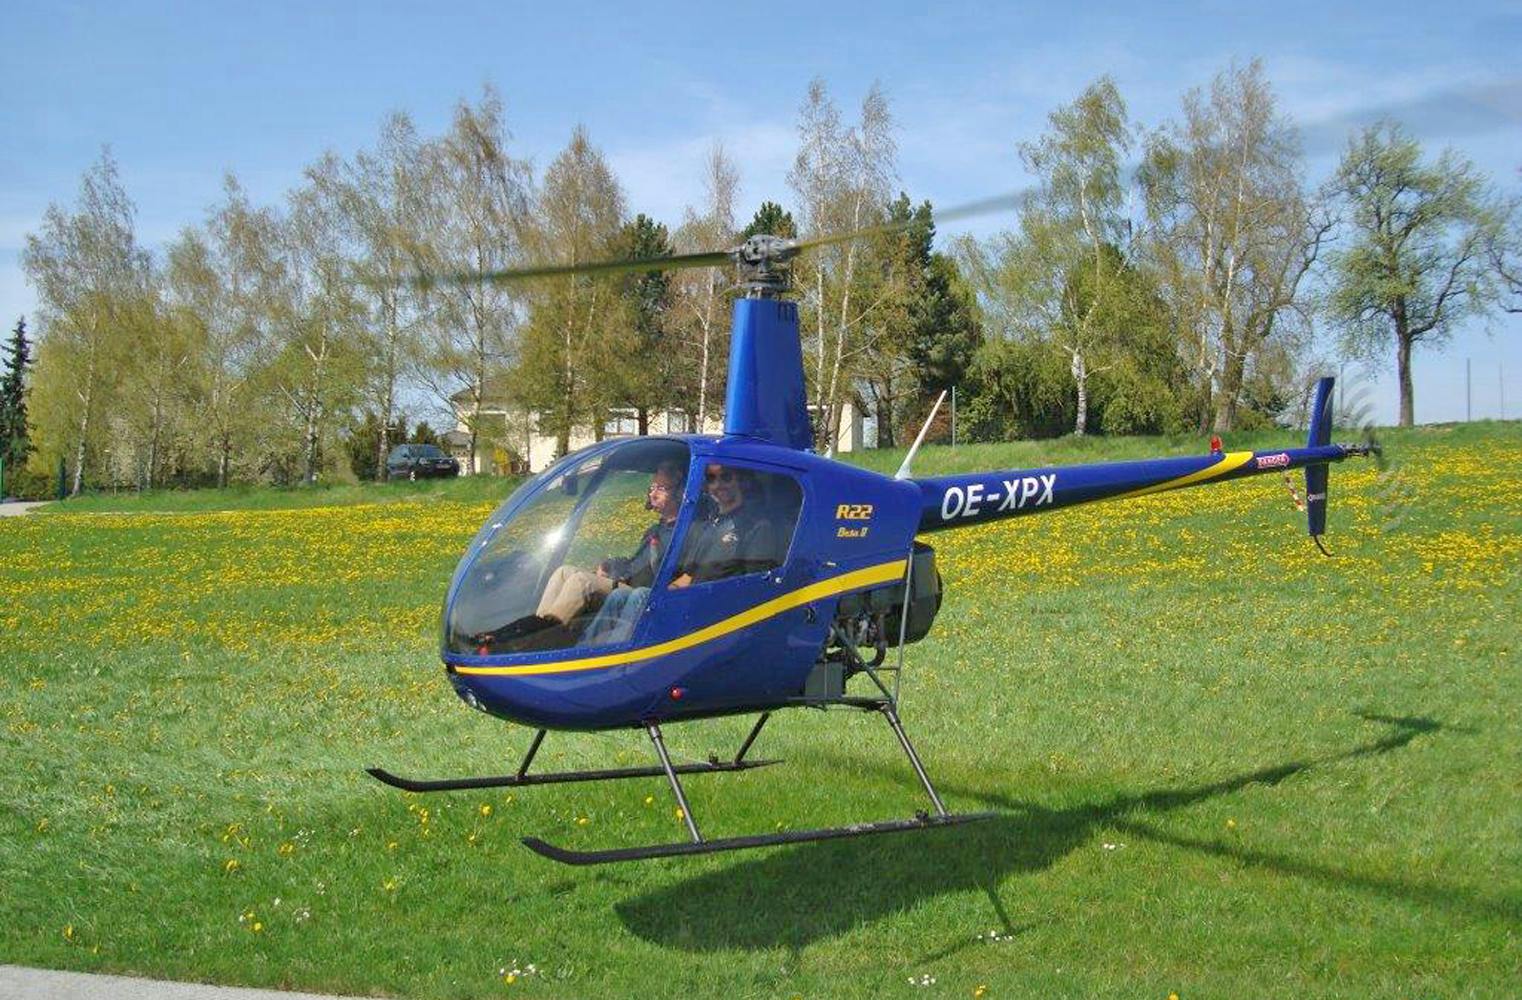 Hubschrauber selber fliegen | Helikopter R22 | 60 Minuten